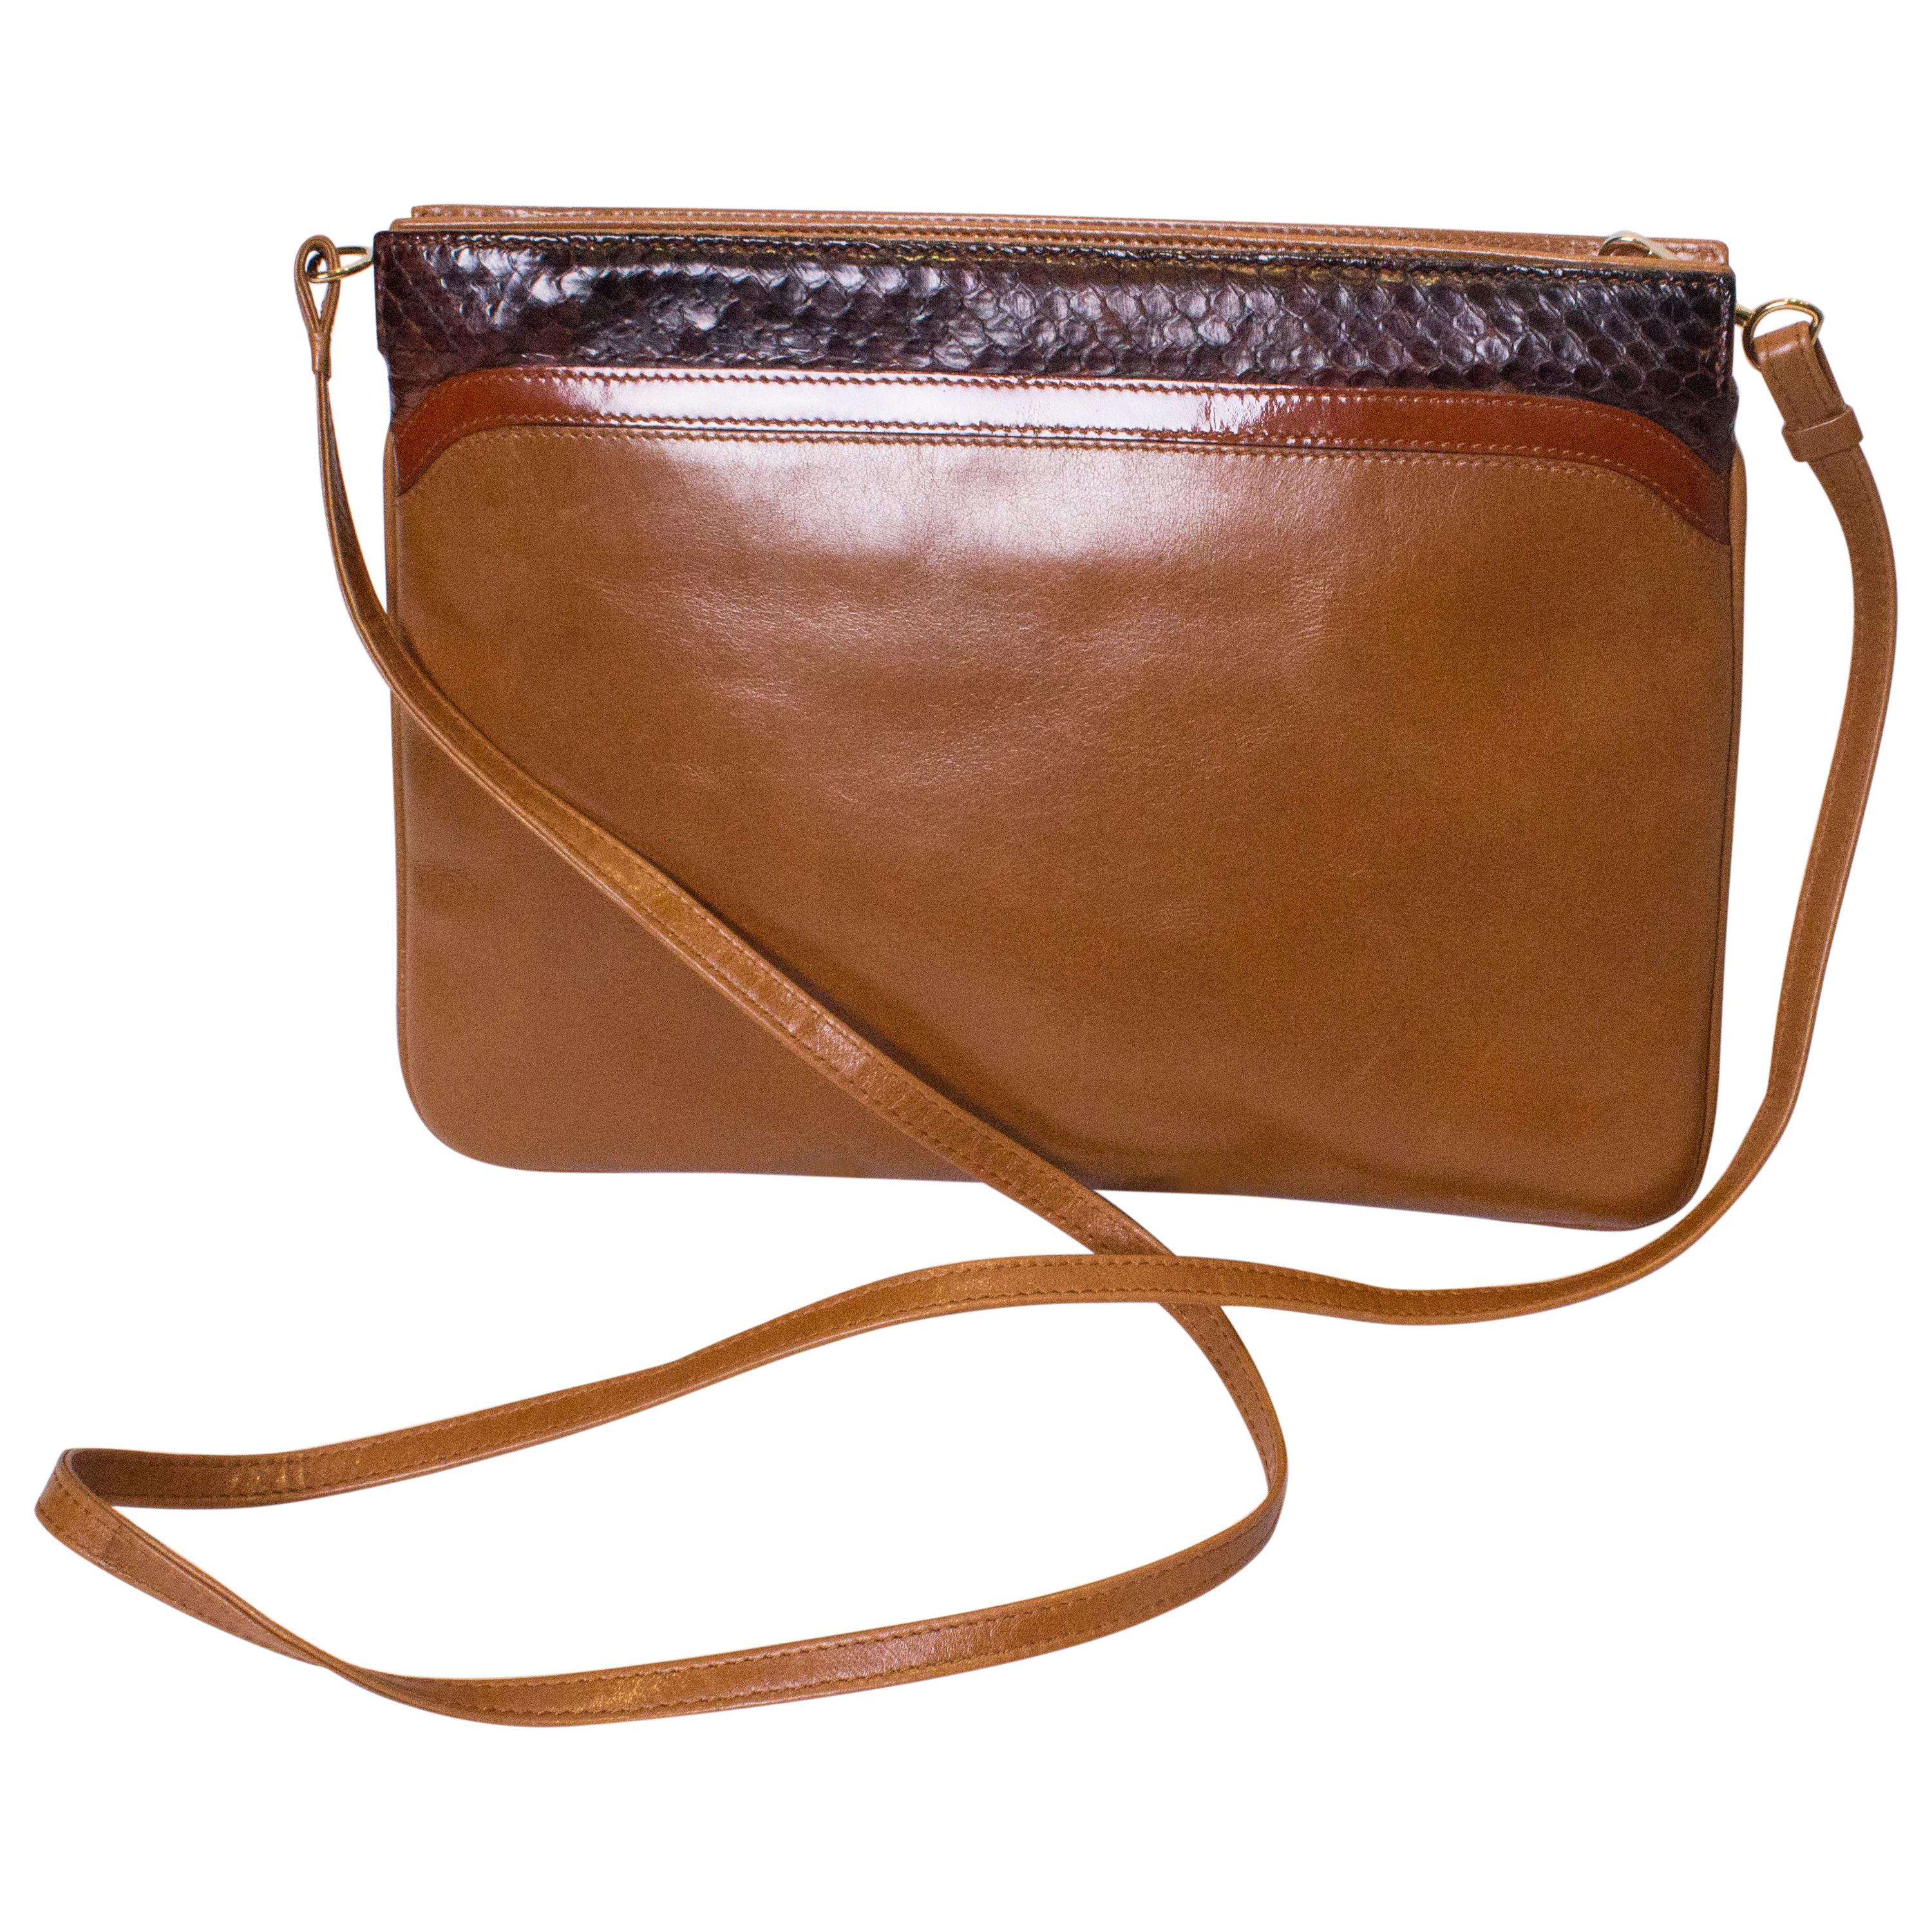 Vintage Ferragamo Leather and Snakeskin Bag